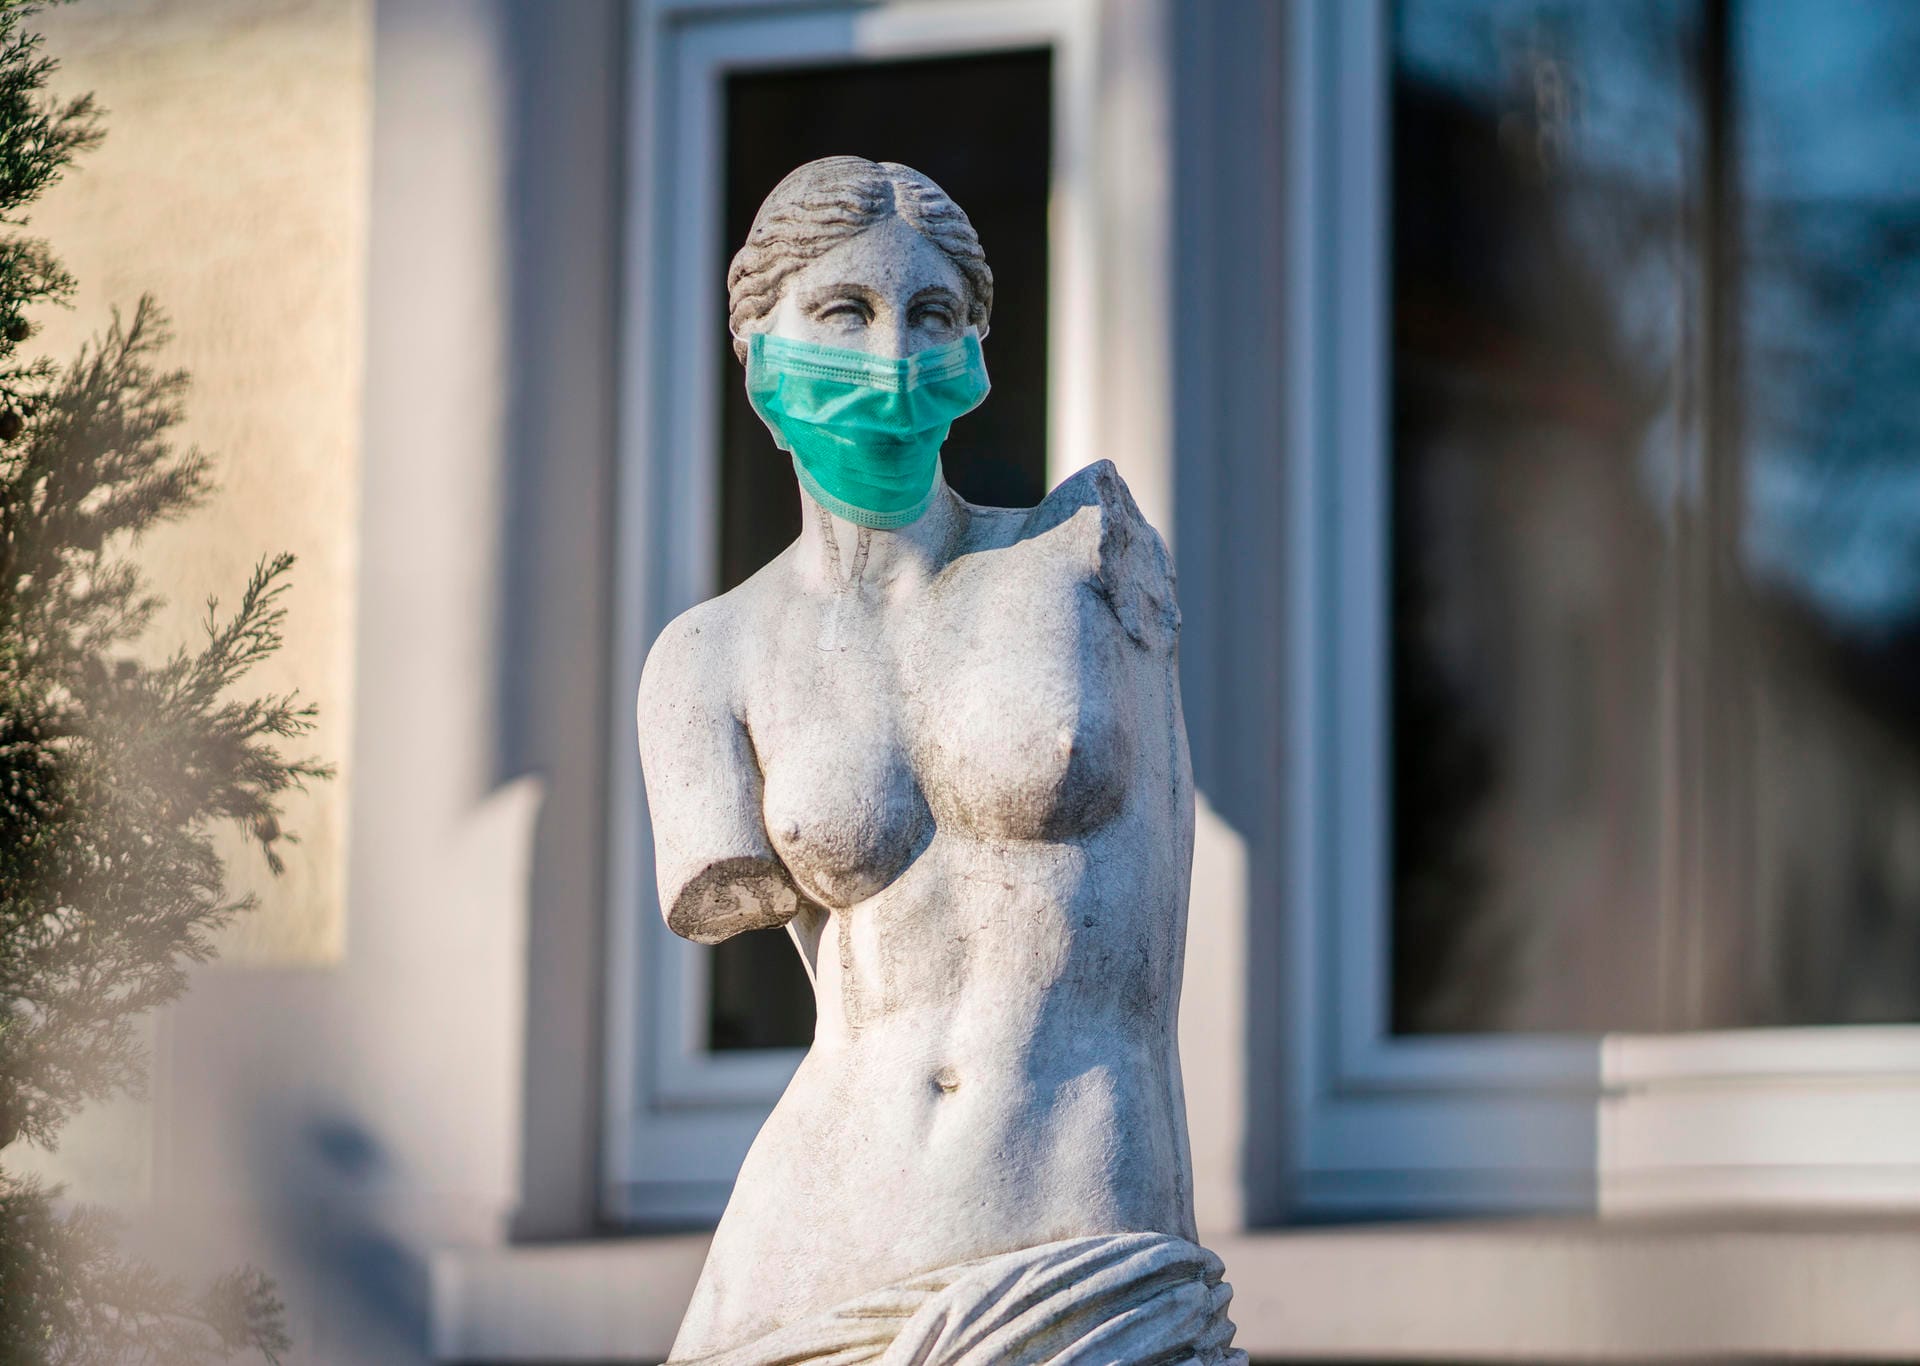 Eine Replik einer berühmten antiken Statue, der Venus von Milo, steht mit einem Mundschutz in einem Frankfurter Vorgarten.